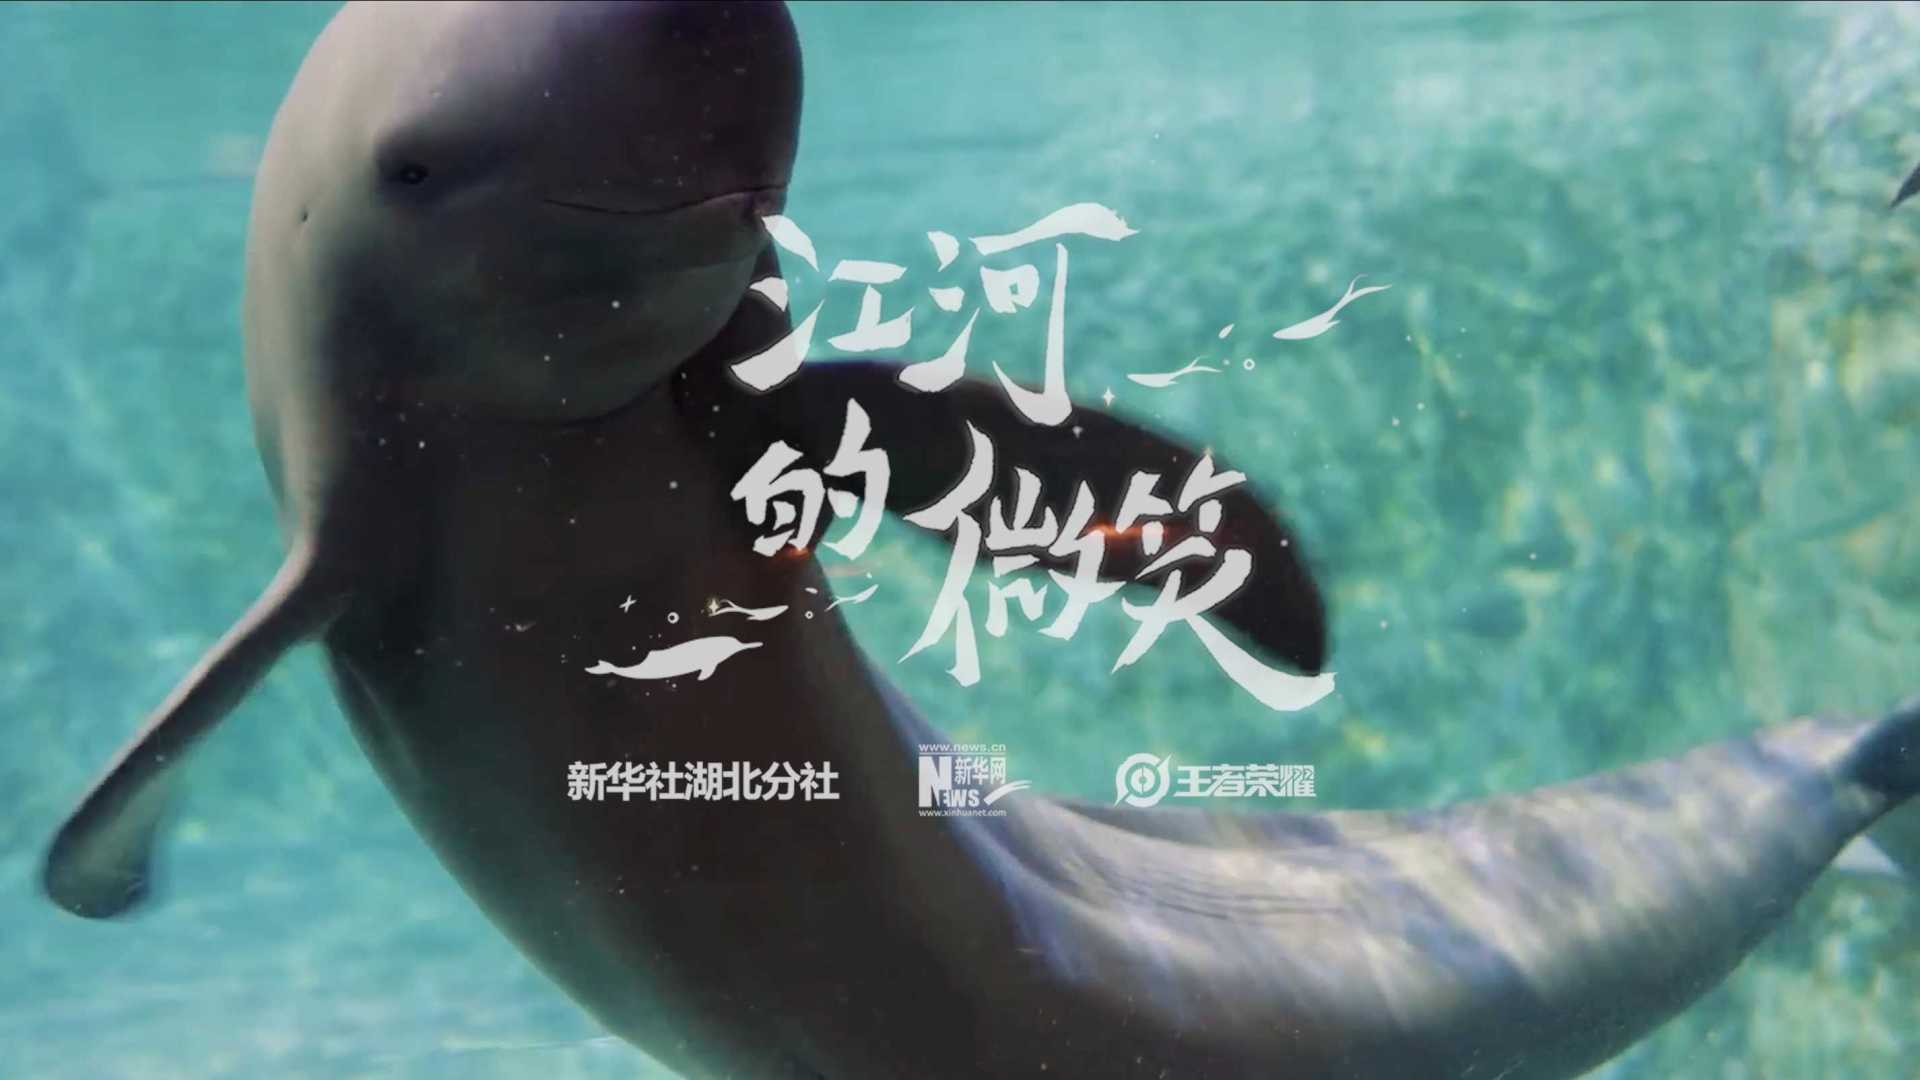 新华社&王者荣耀 8周年公益纪录片《江河的微笑》